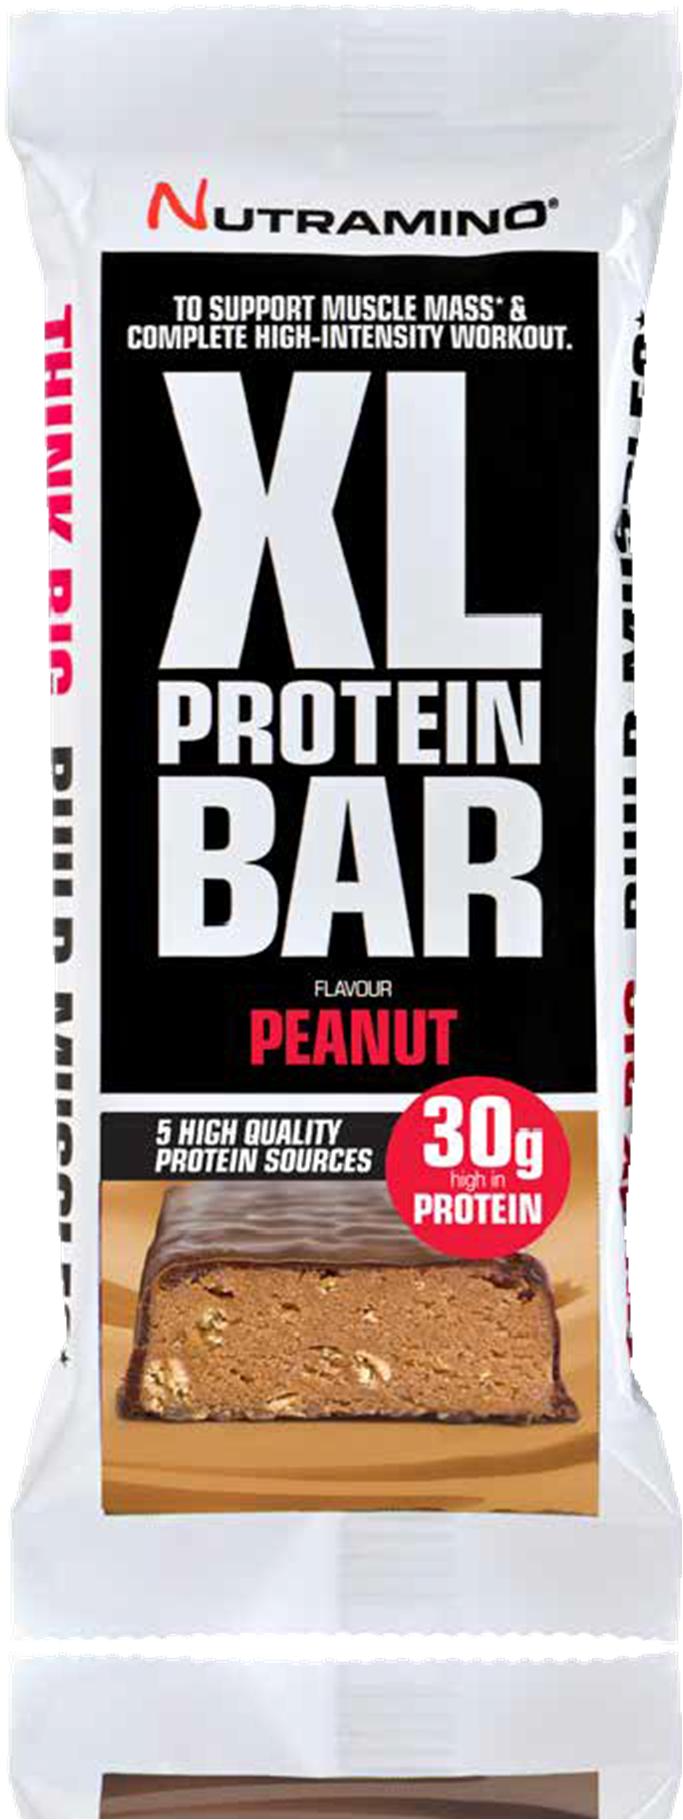 XL PROTEIN BAR PEANUT 82 g Nutramino XL Protein Bar on suunniteltu vastaamaan kovan intensiteetin harjoittelun vaatimuksia. Patukassa on huikeat 30 g proteiinia ja 32 g hiilihydraattia.